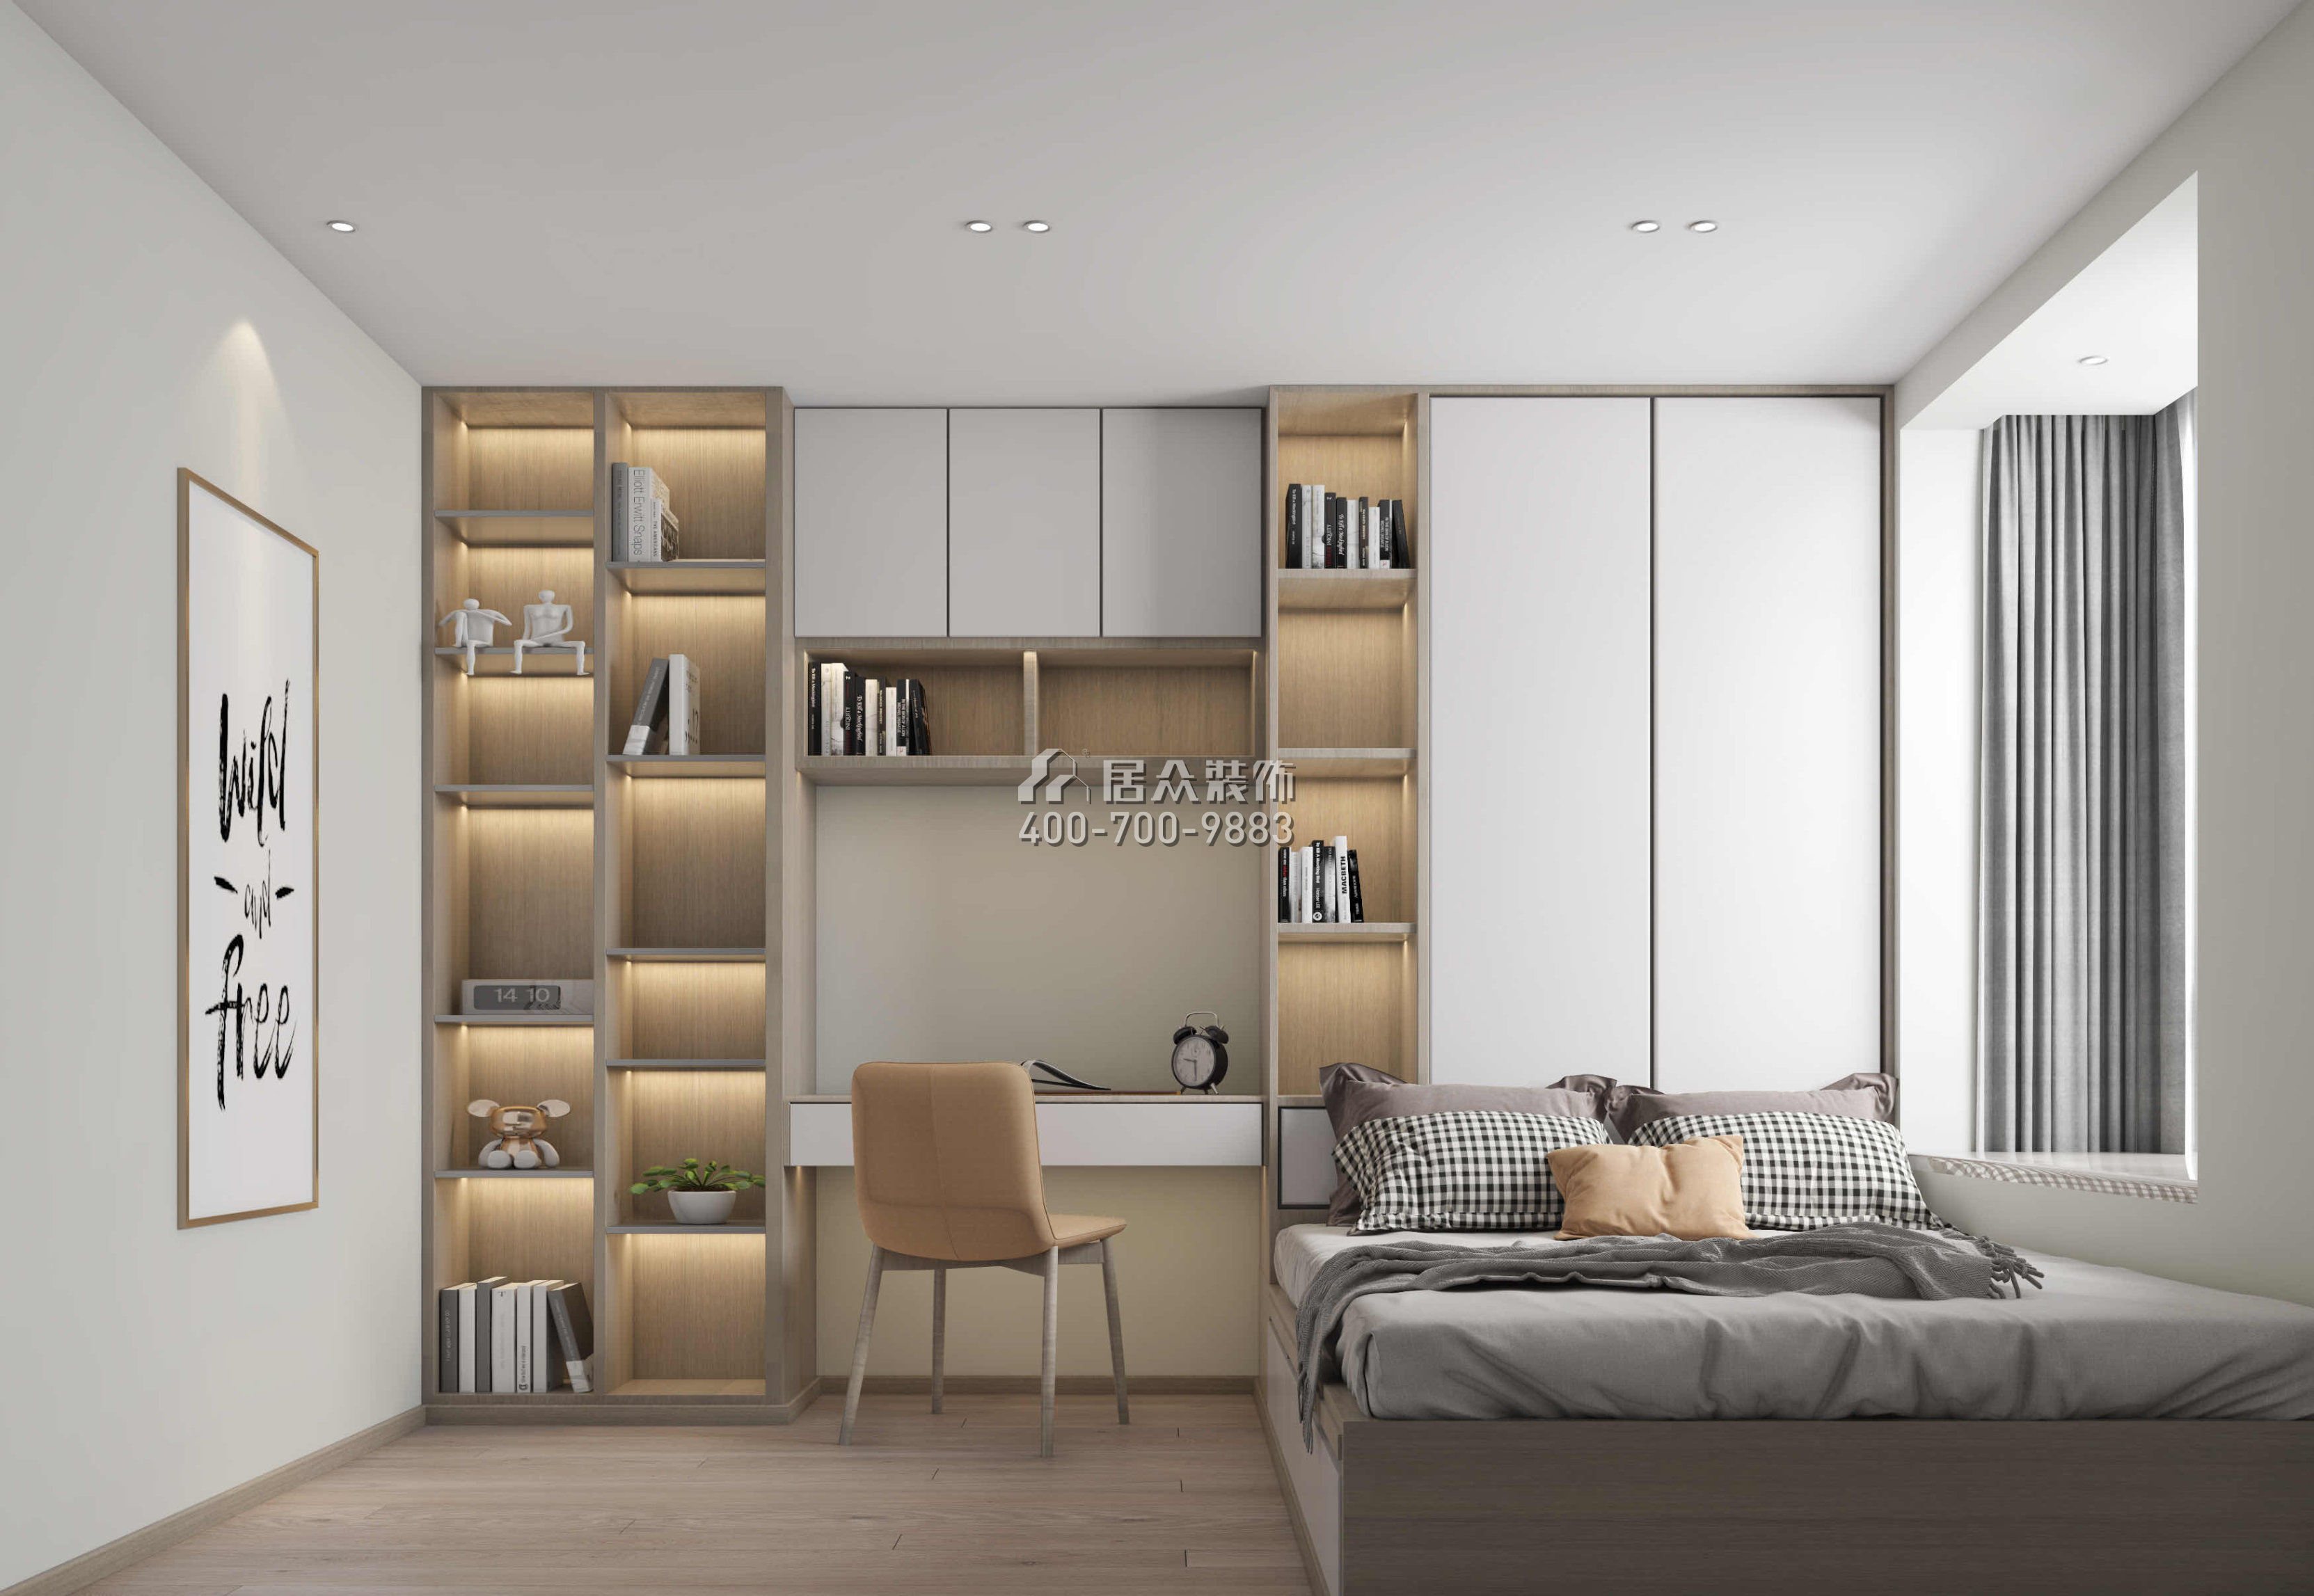 新世纪颐龙湾120平方米现代简约风格平层户型卧室书房一体装修效果图